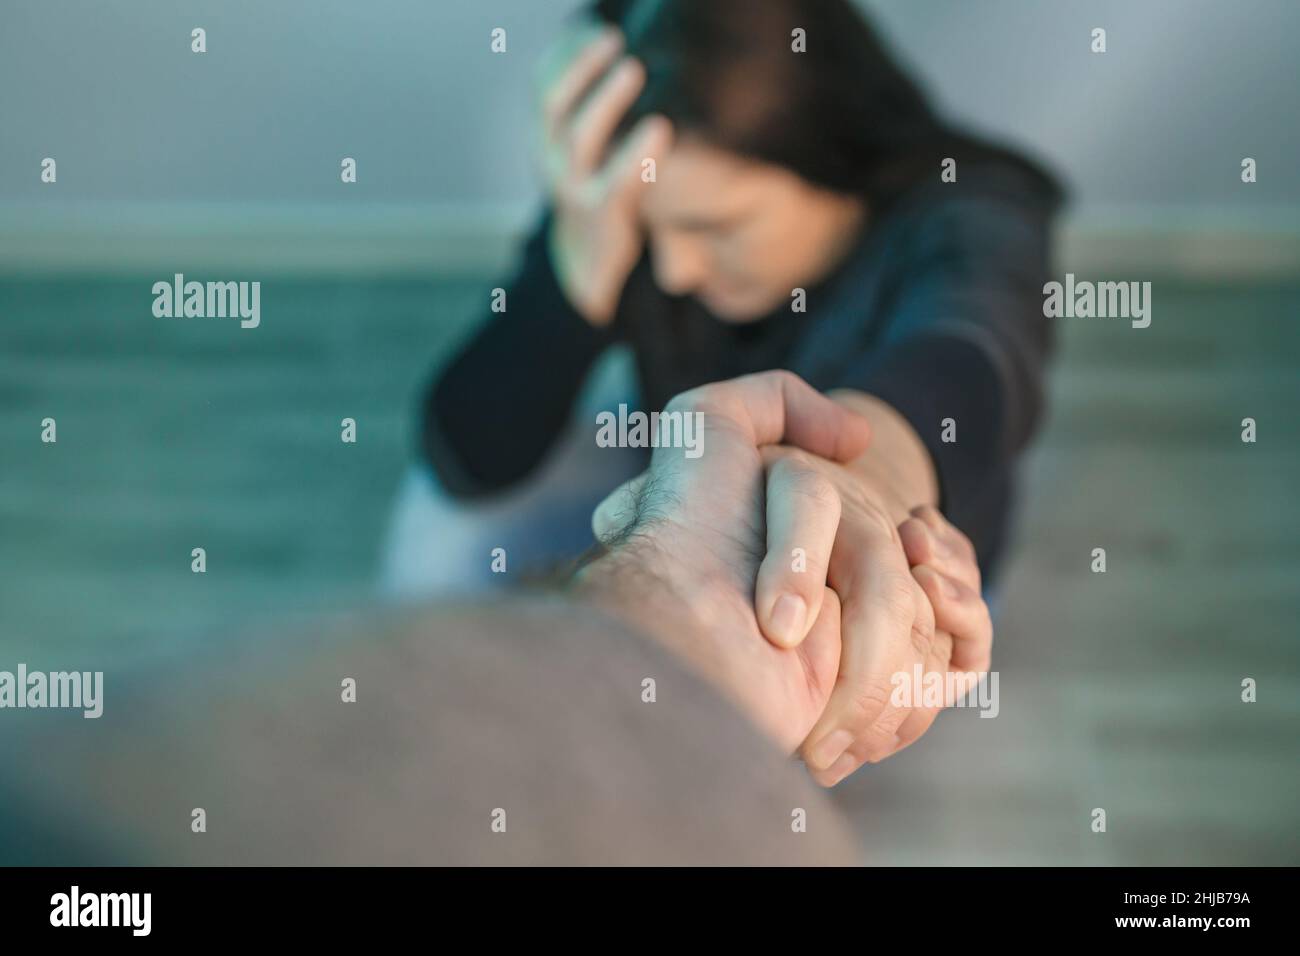 Mujer irreconocible con problemas de salud mental recibiendo ayuda del hombre que sostiene la mano Foto de stock